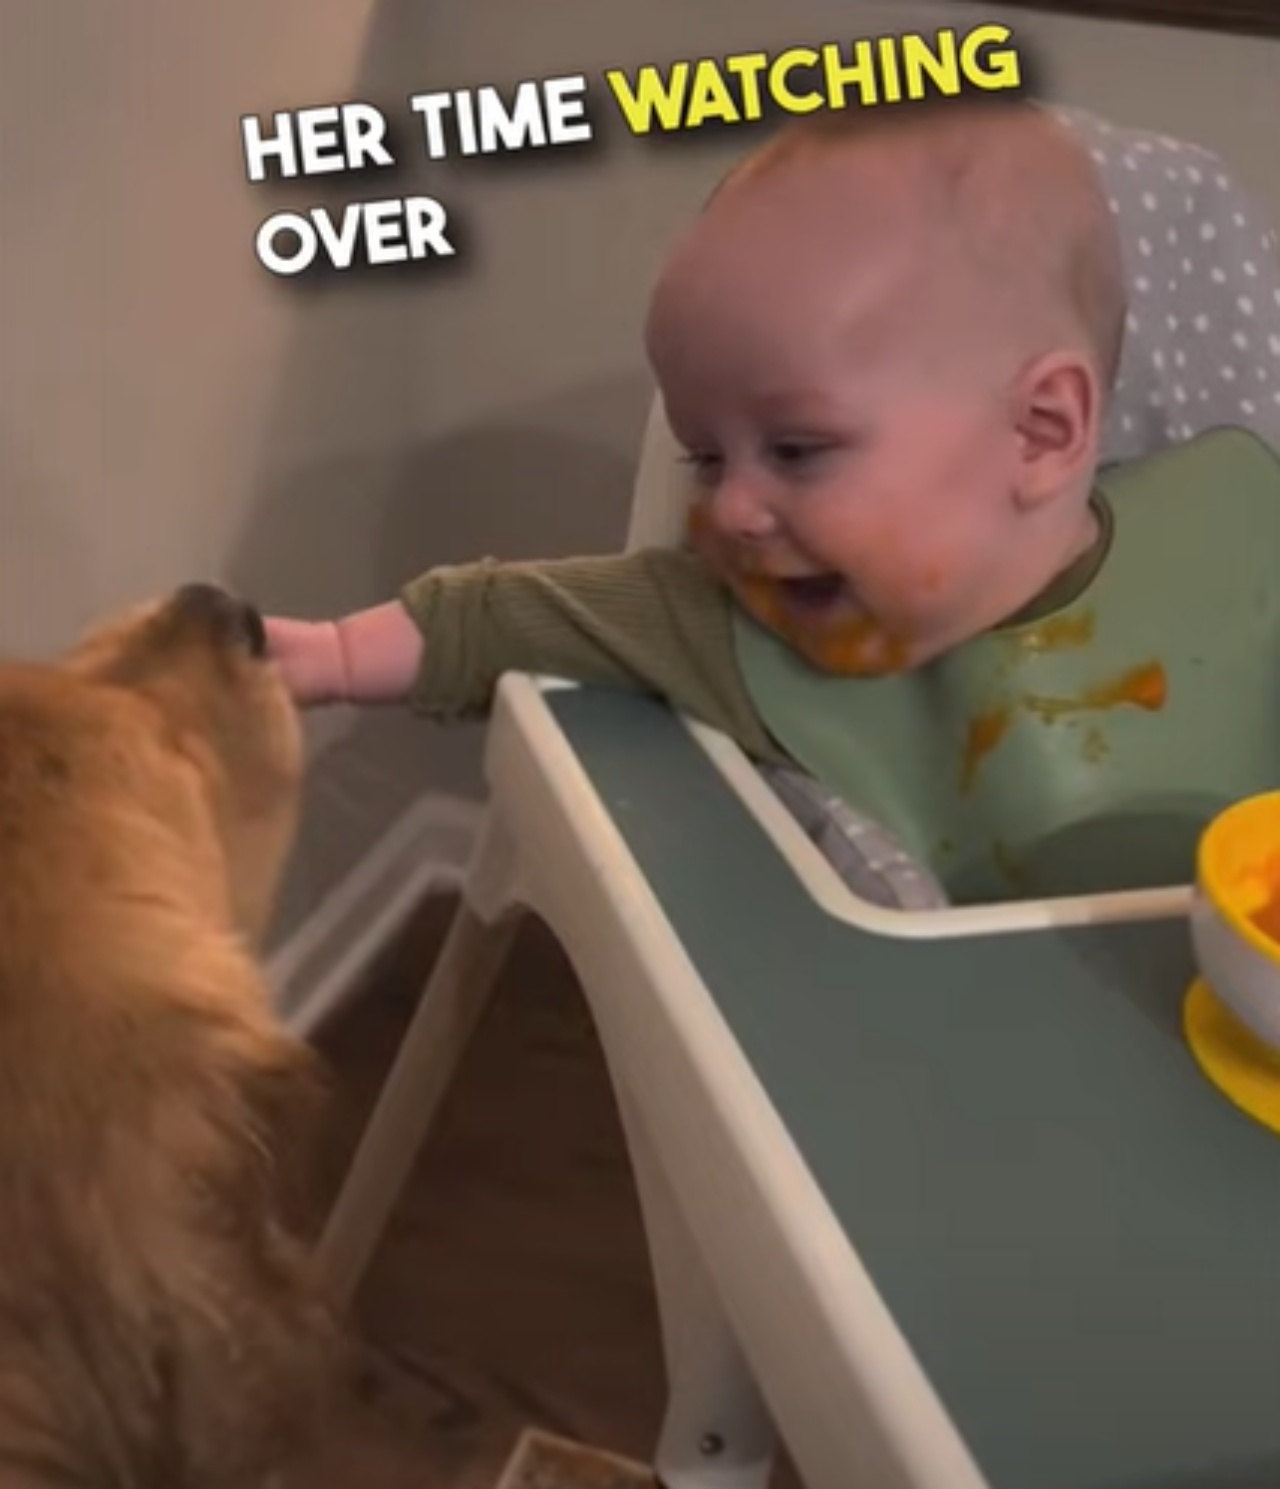 Cucciolo lecca il neonato